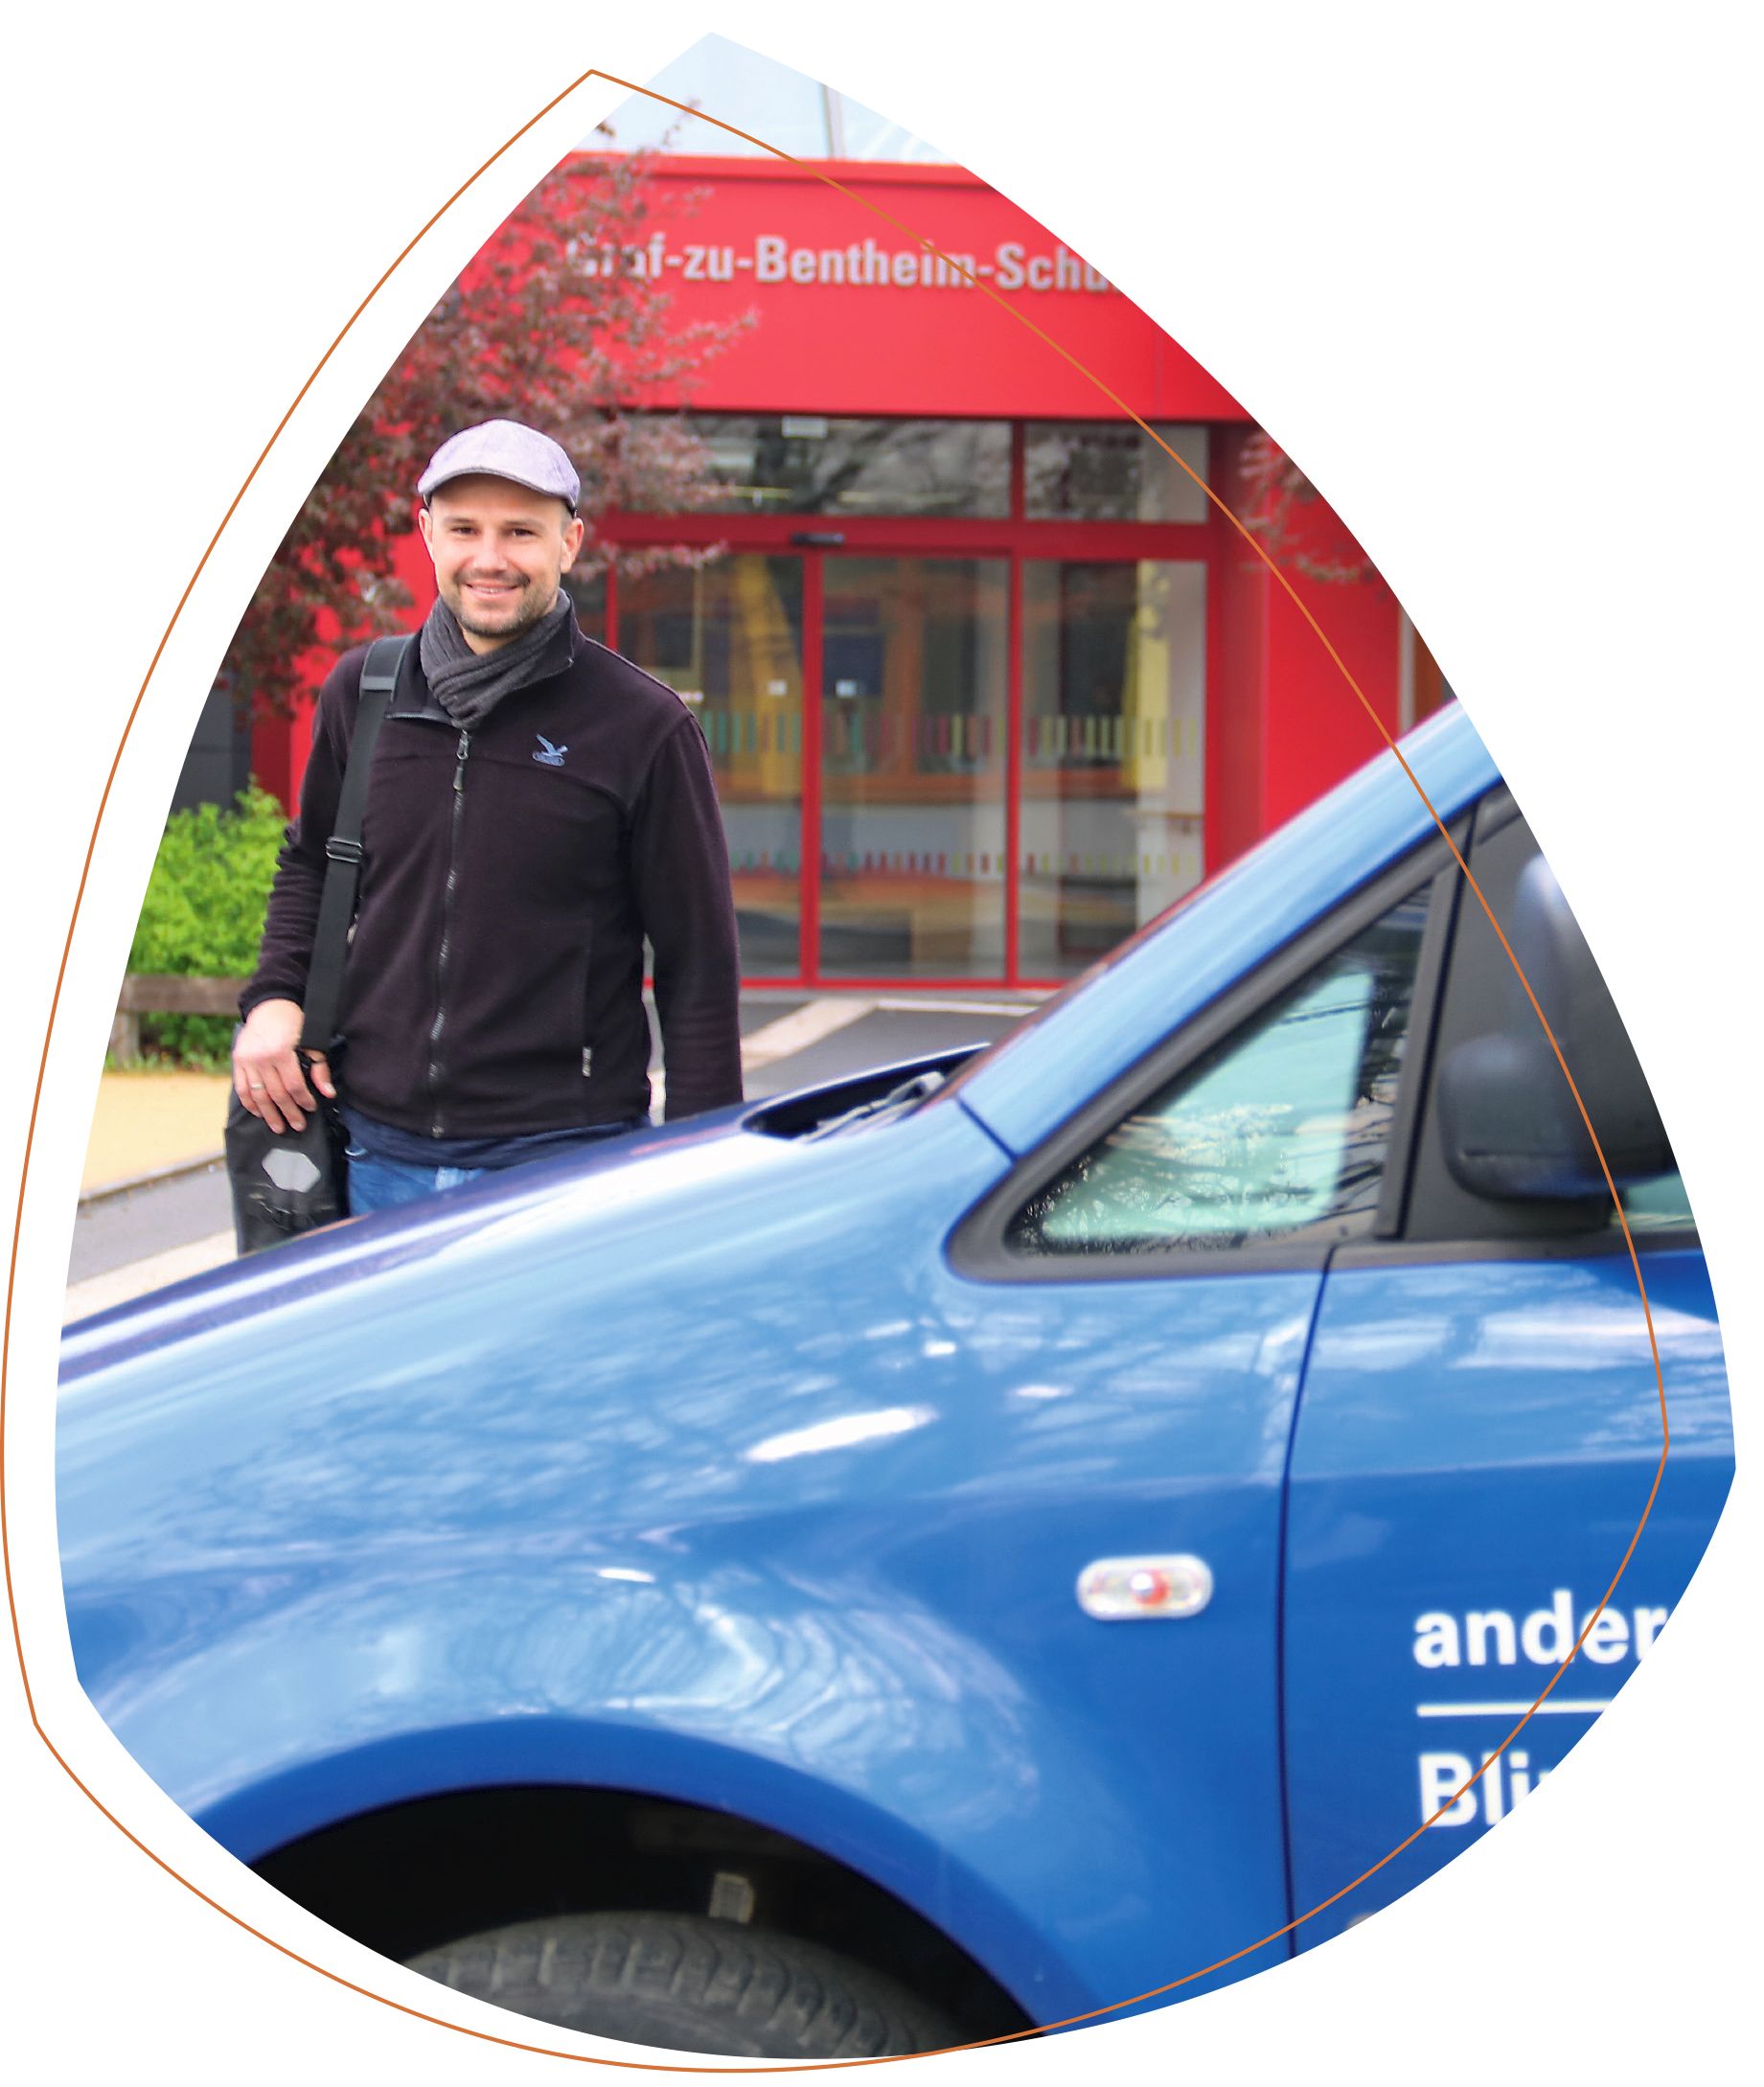 Markus Held hinter einem blauen Auto der Blindeninstitutsstiftung. Er trägt eine schwarze Jacke und eine graue Mütze. Auf der linken Schulter trägt er eine Tasche. Im Hintergrund ist die rote Fassade der Graf-zu-Bentheim-Schule zu sehen. 